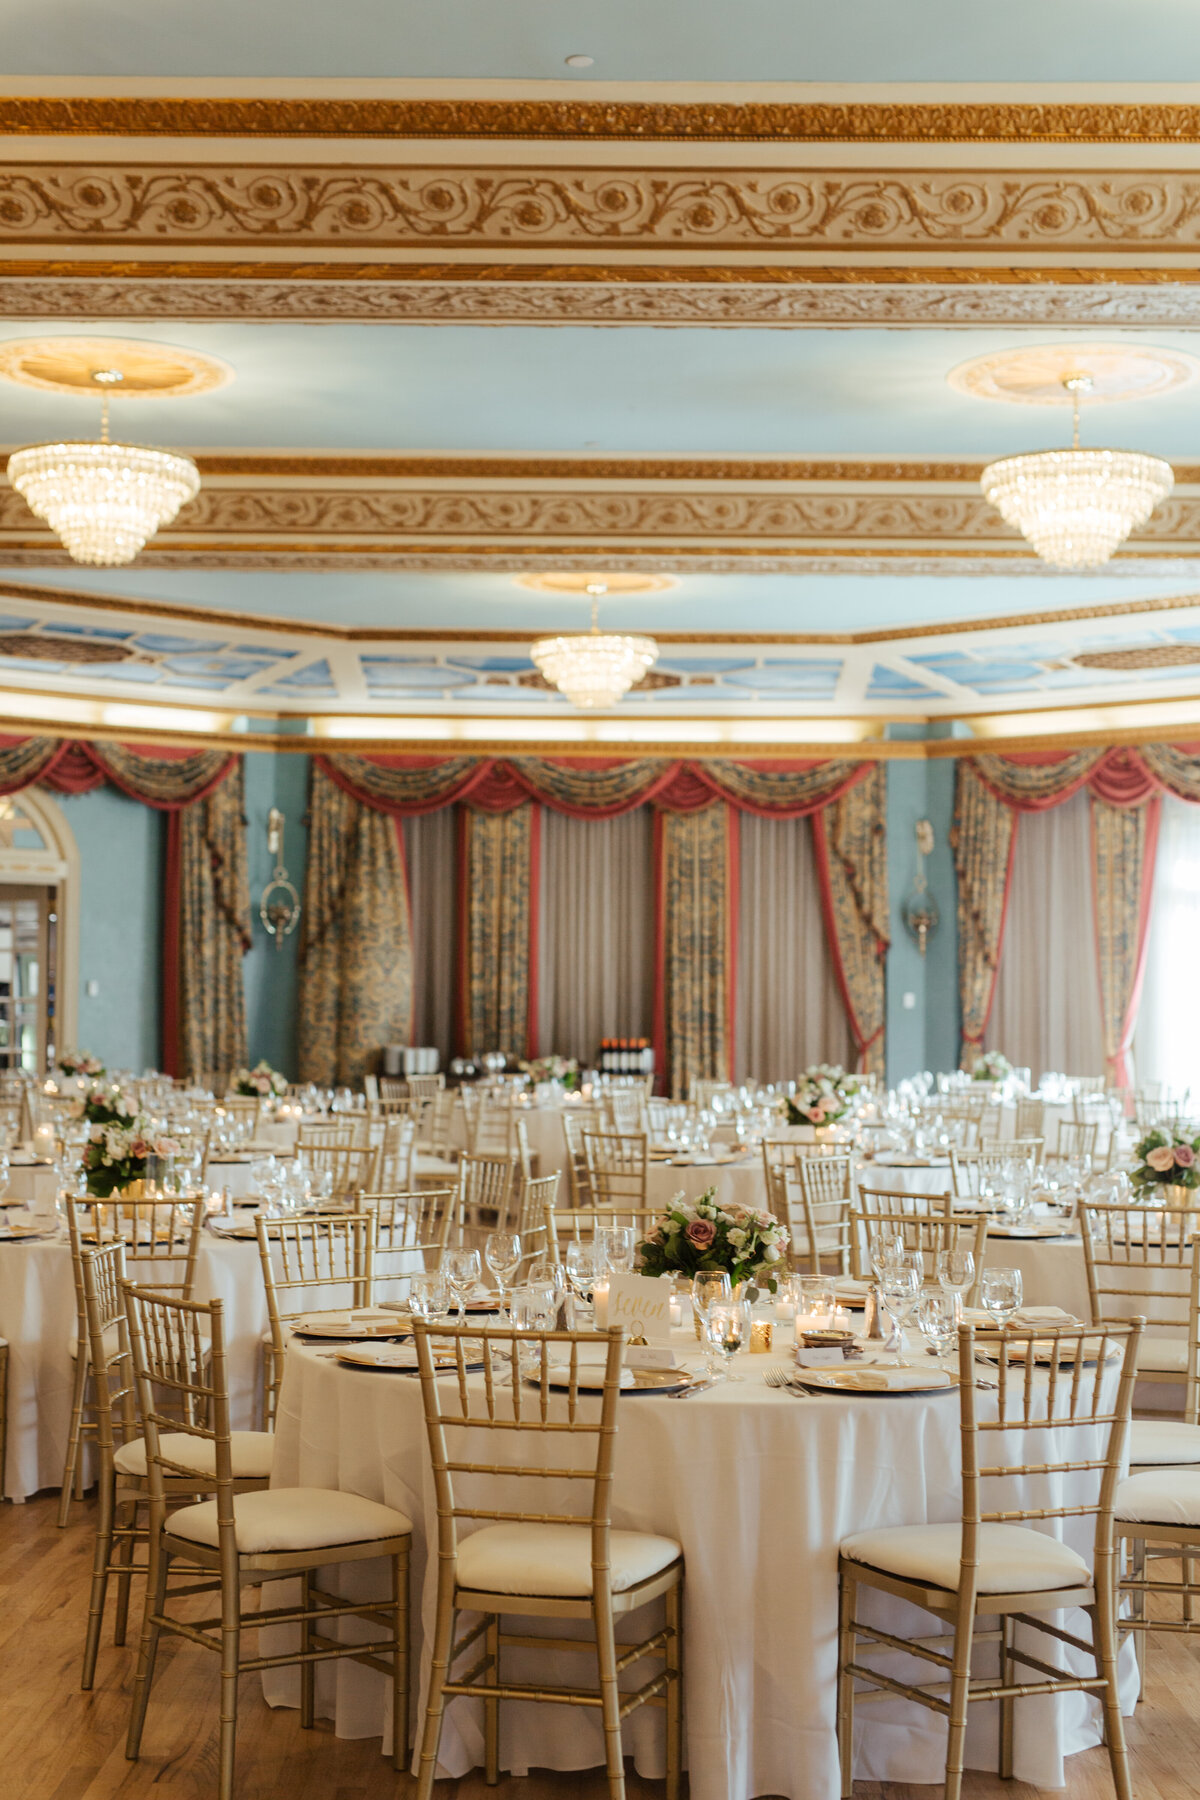 Fairmont Banff Springs Cascade Ballroom Wedding Table Decor Ideas